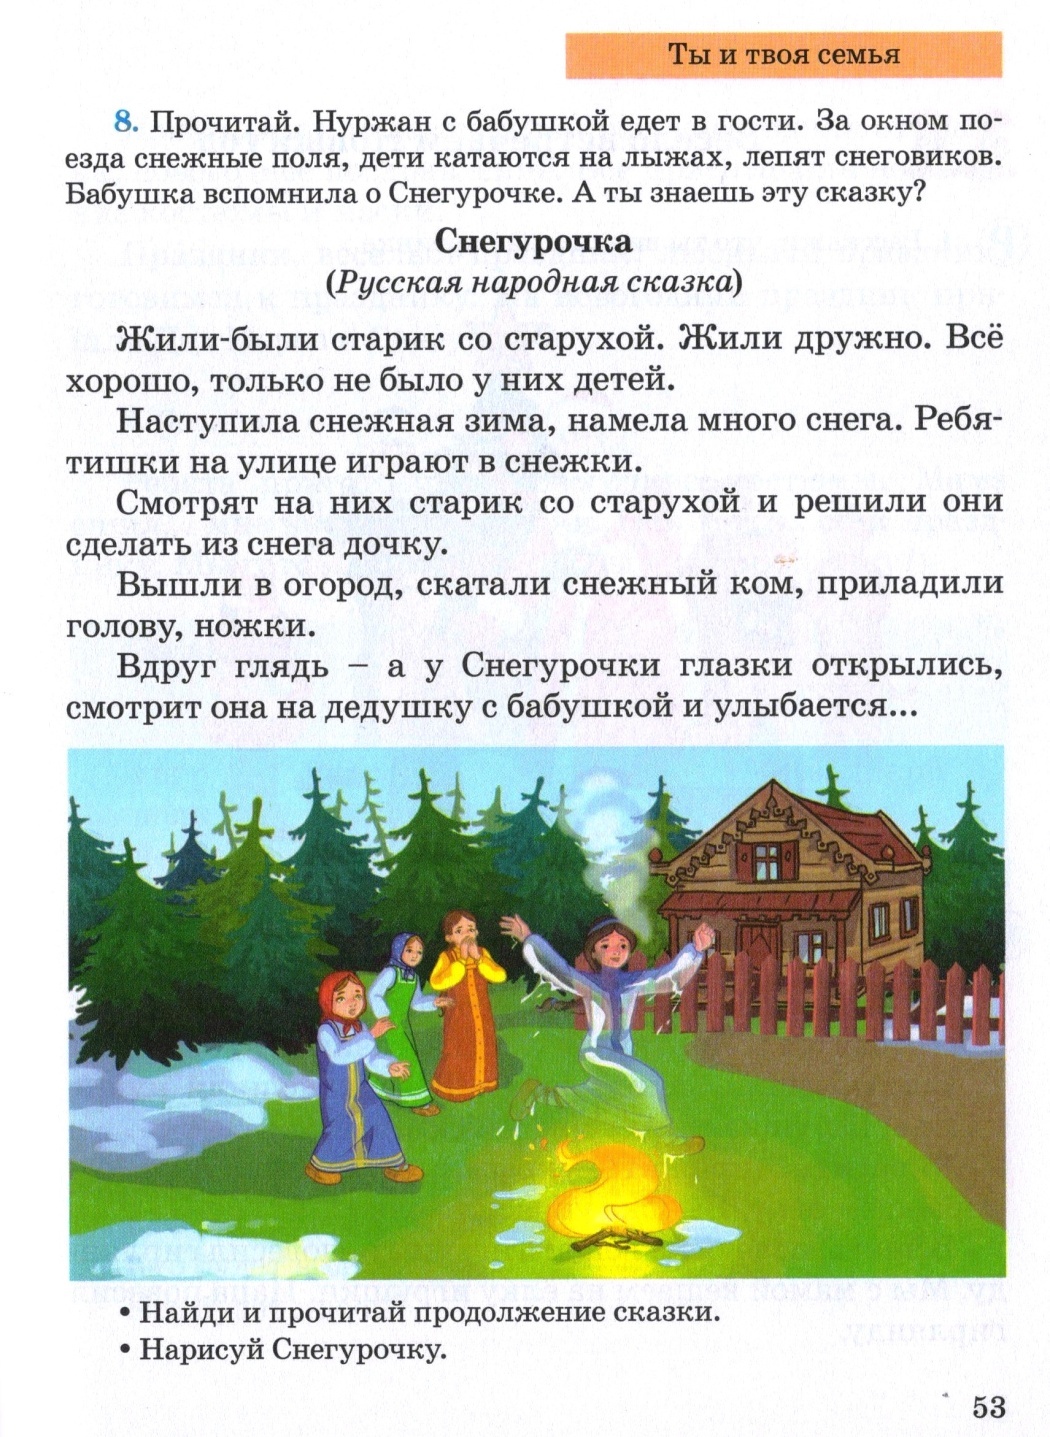 Поурочное планирование по русскому языку 4 класс 2 четверть 14 уроков